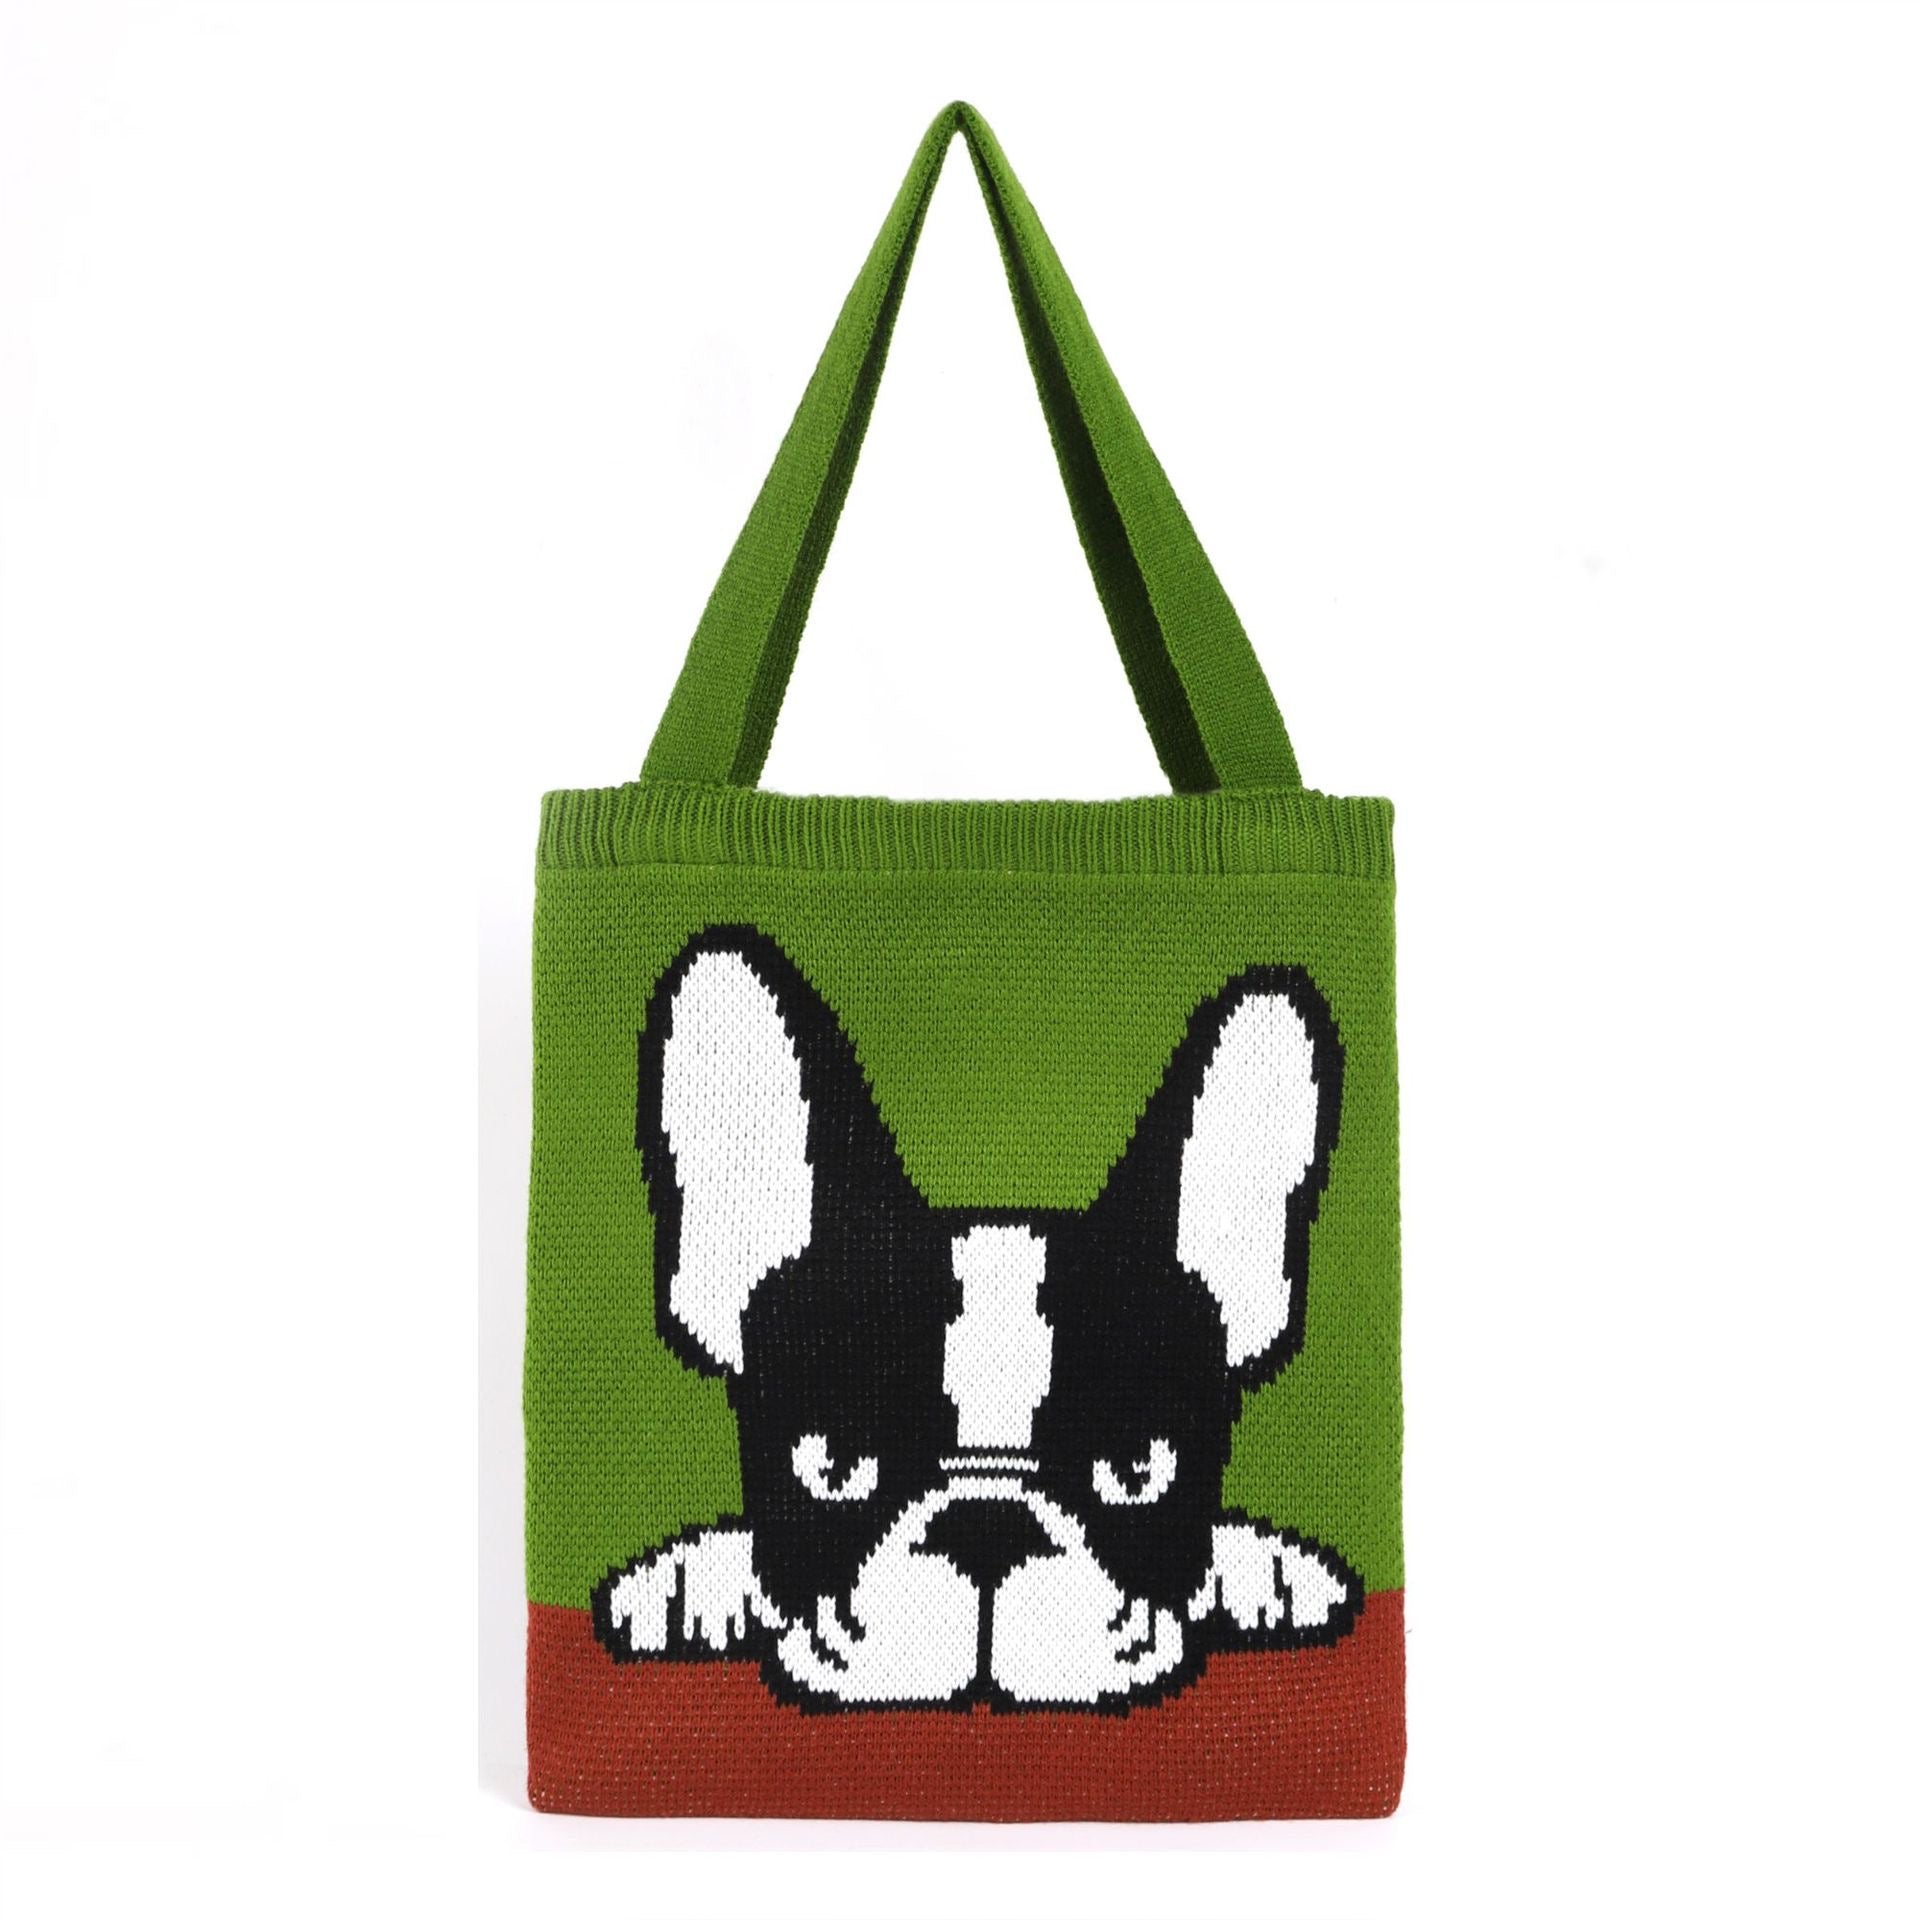 Pug dog Tote Bag within Apple